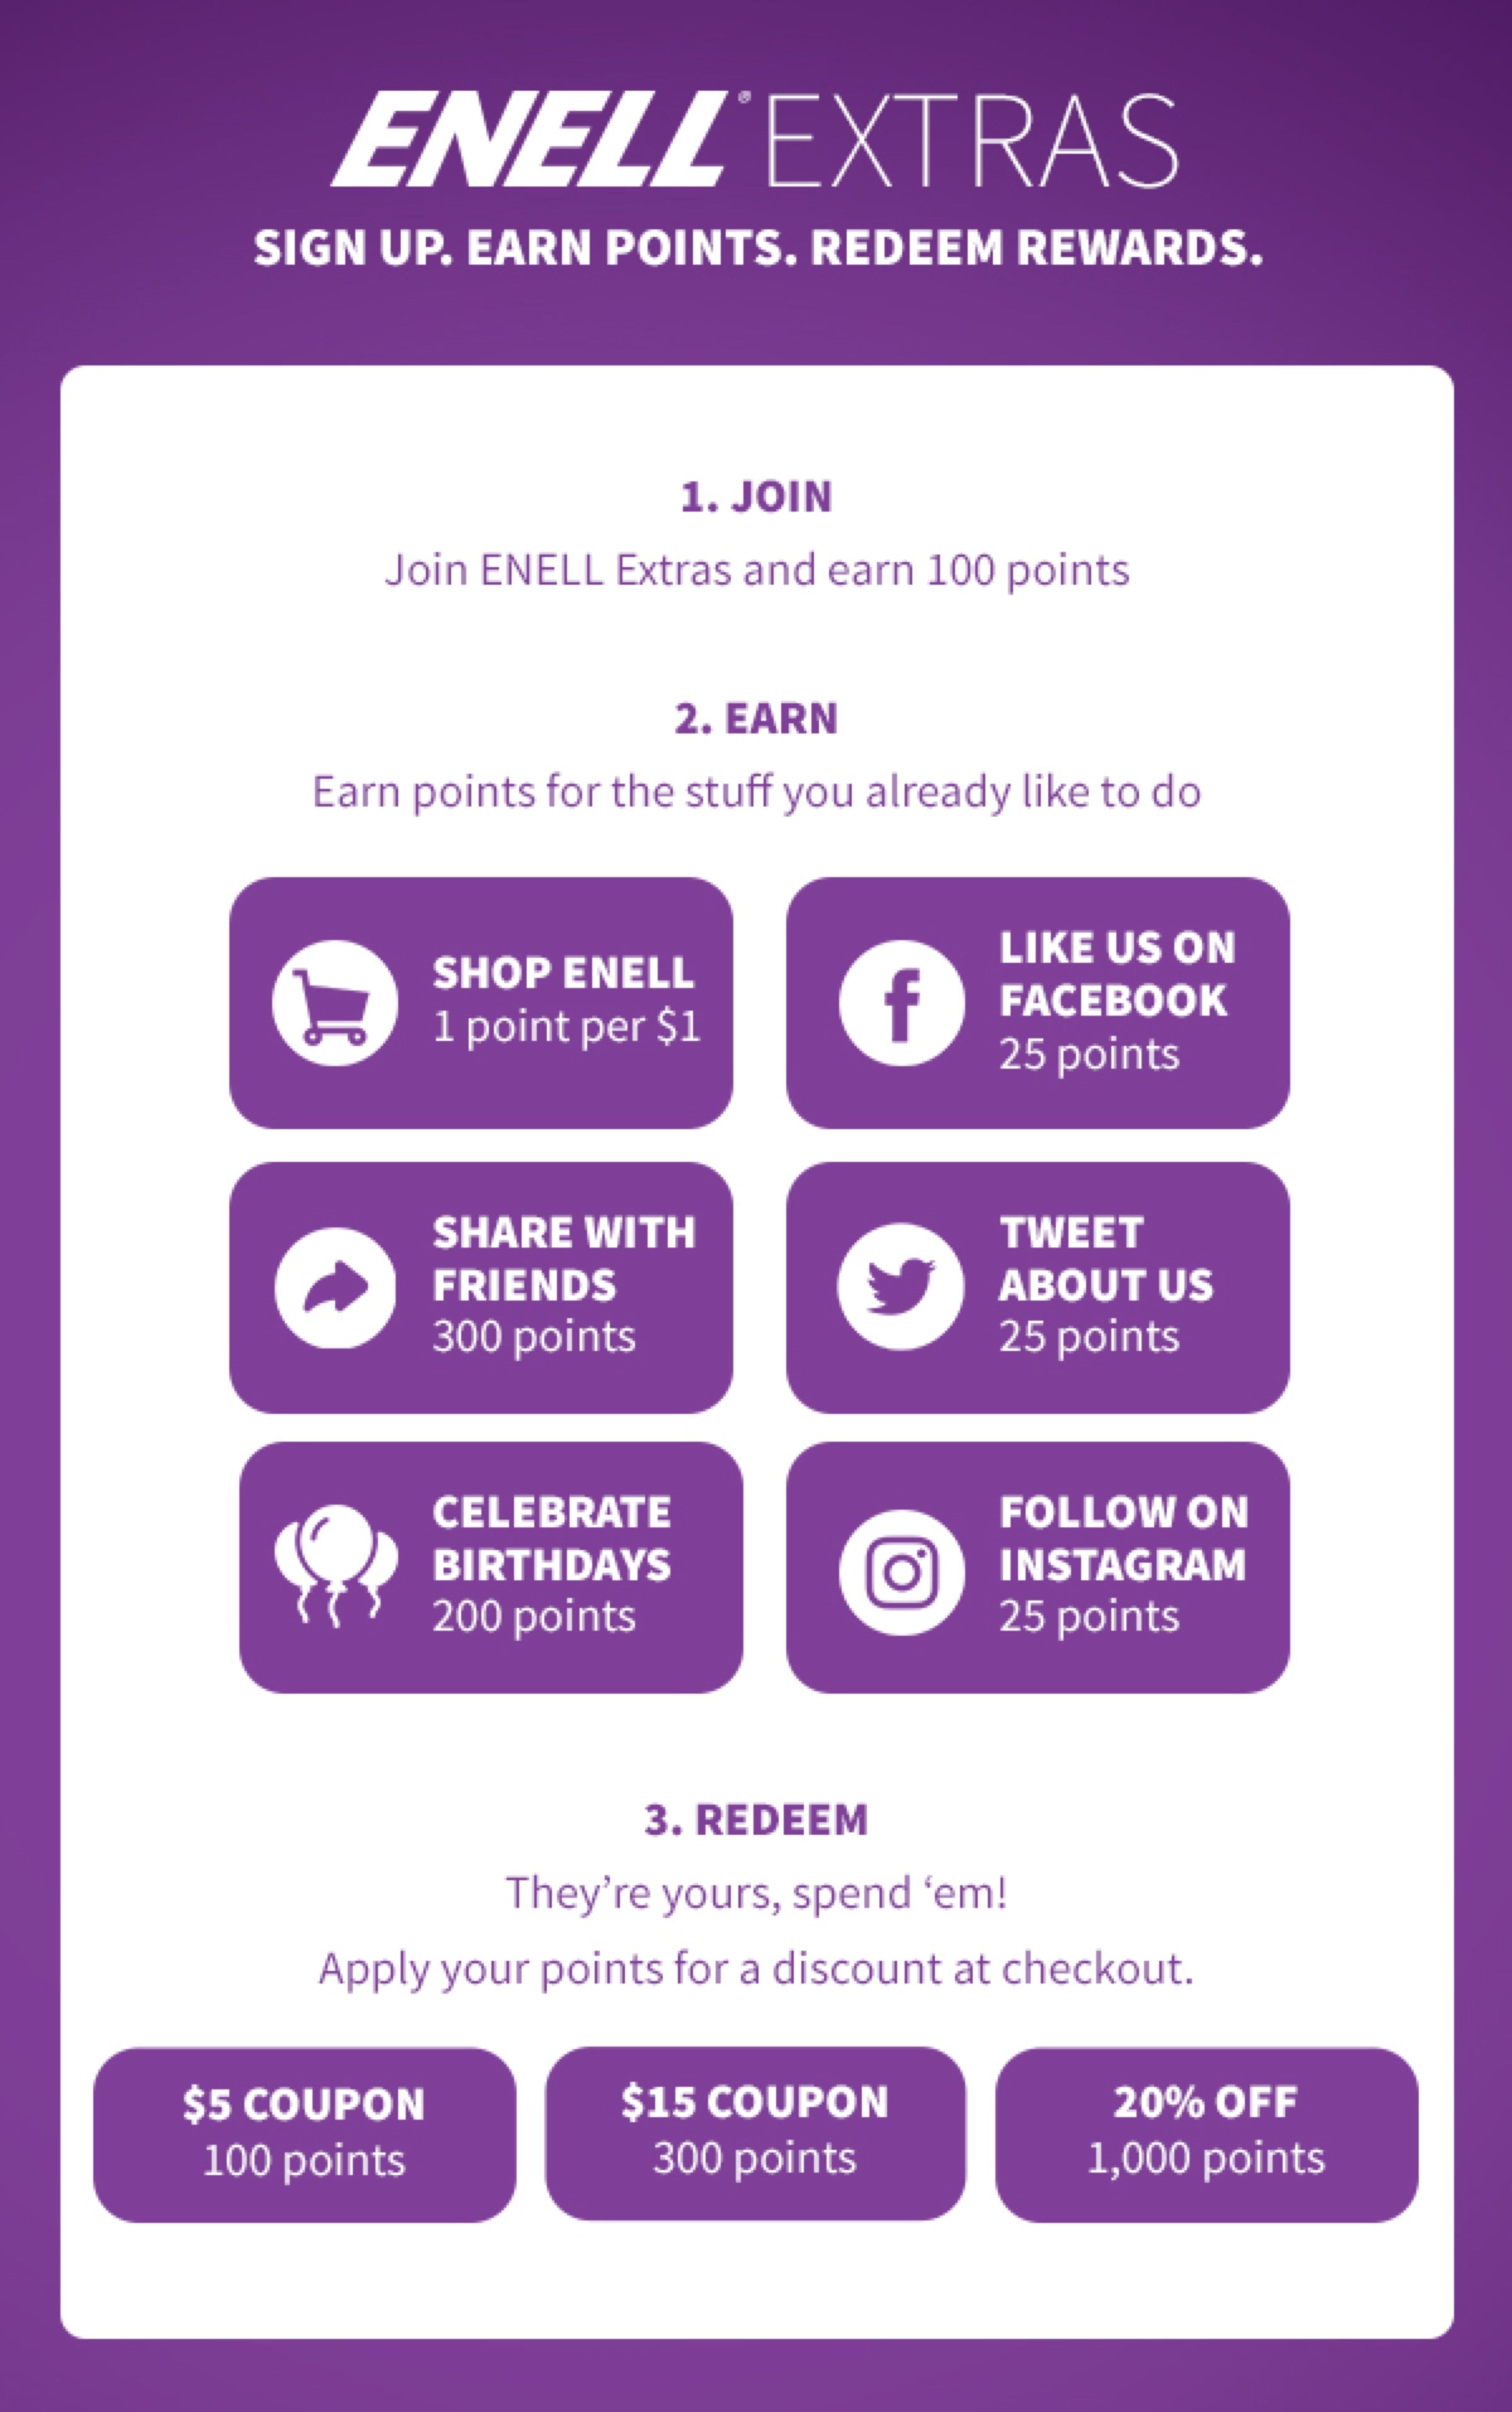 Enell Extras Rewards Program